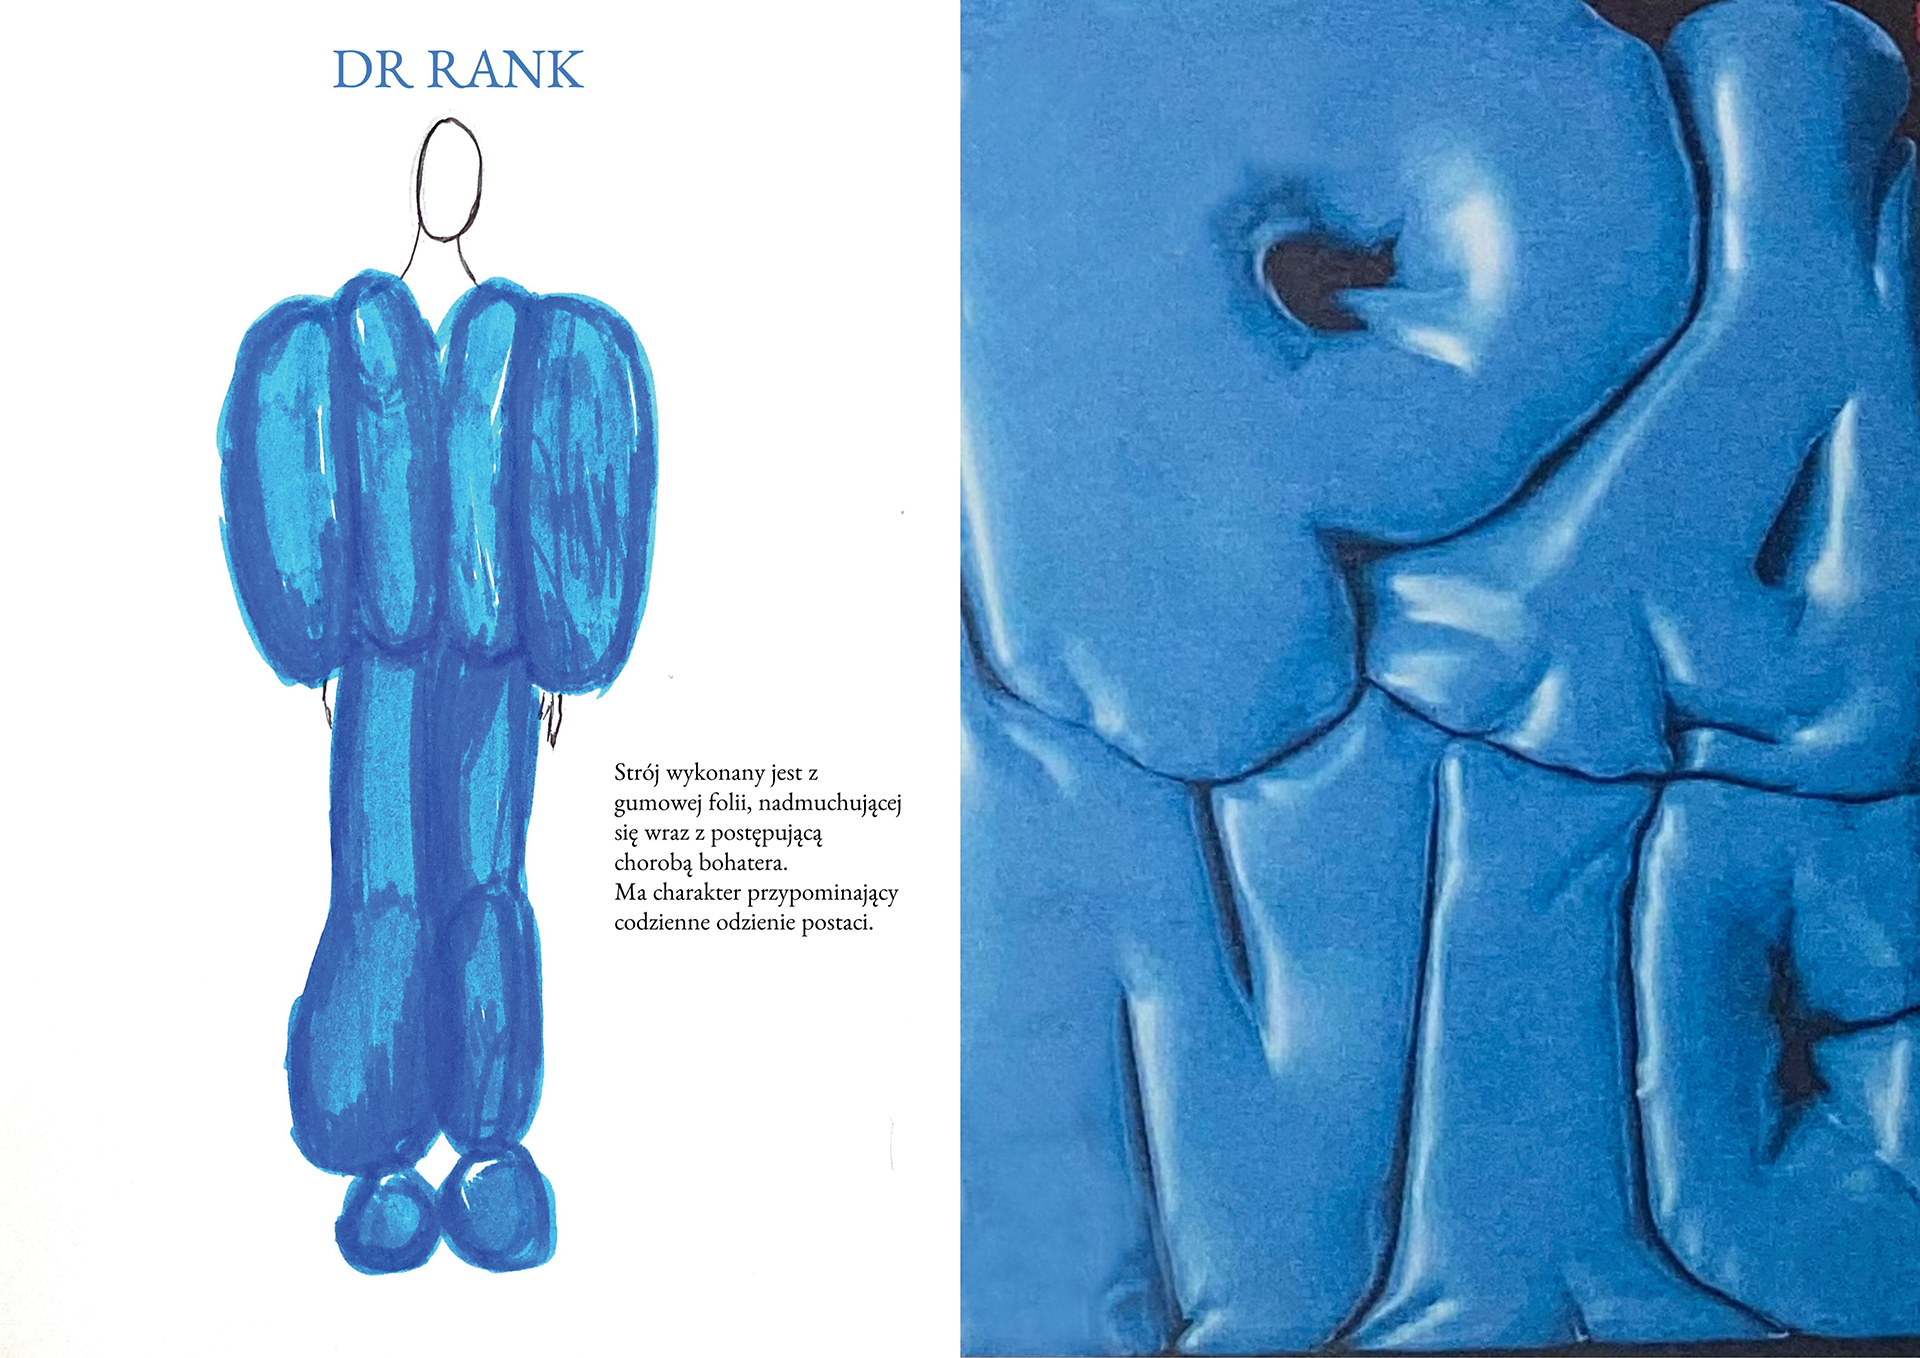 Po lewej rysunek mężczyzny w dmuchanym niebieskim stroju zakrywającym całe ciało oprócz głowy i dłoni. Po prawej dmuchane foliowe niebieskie litery.